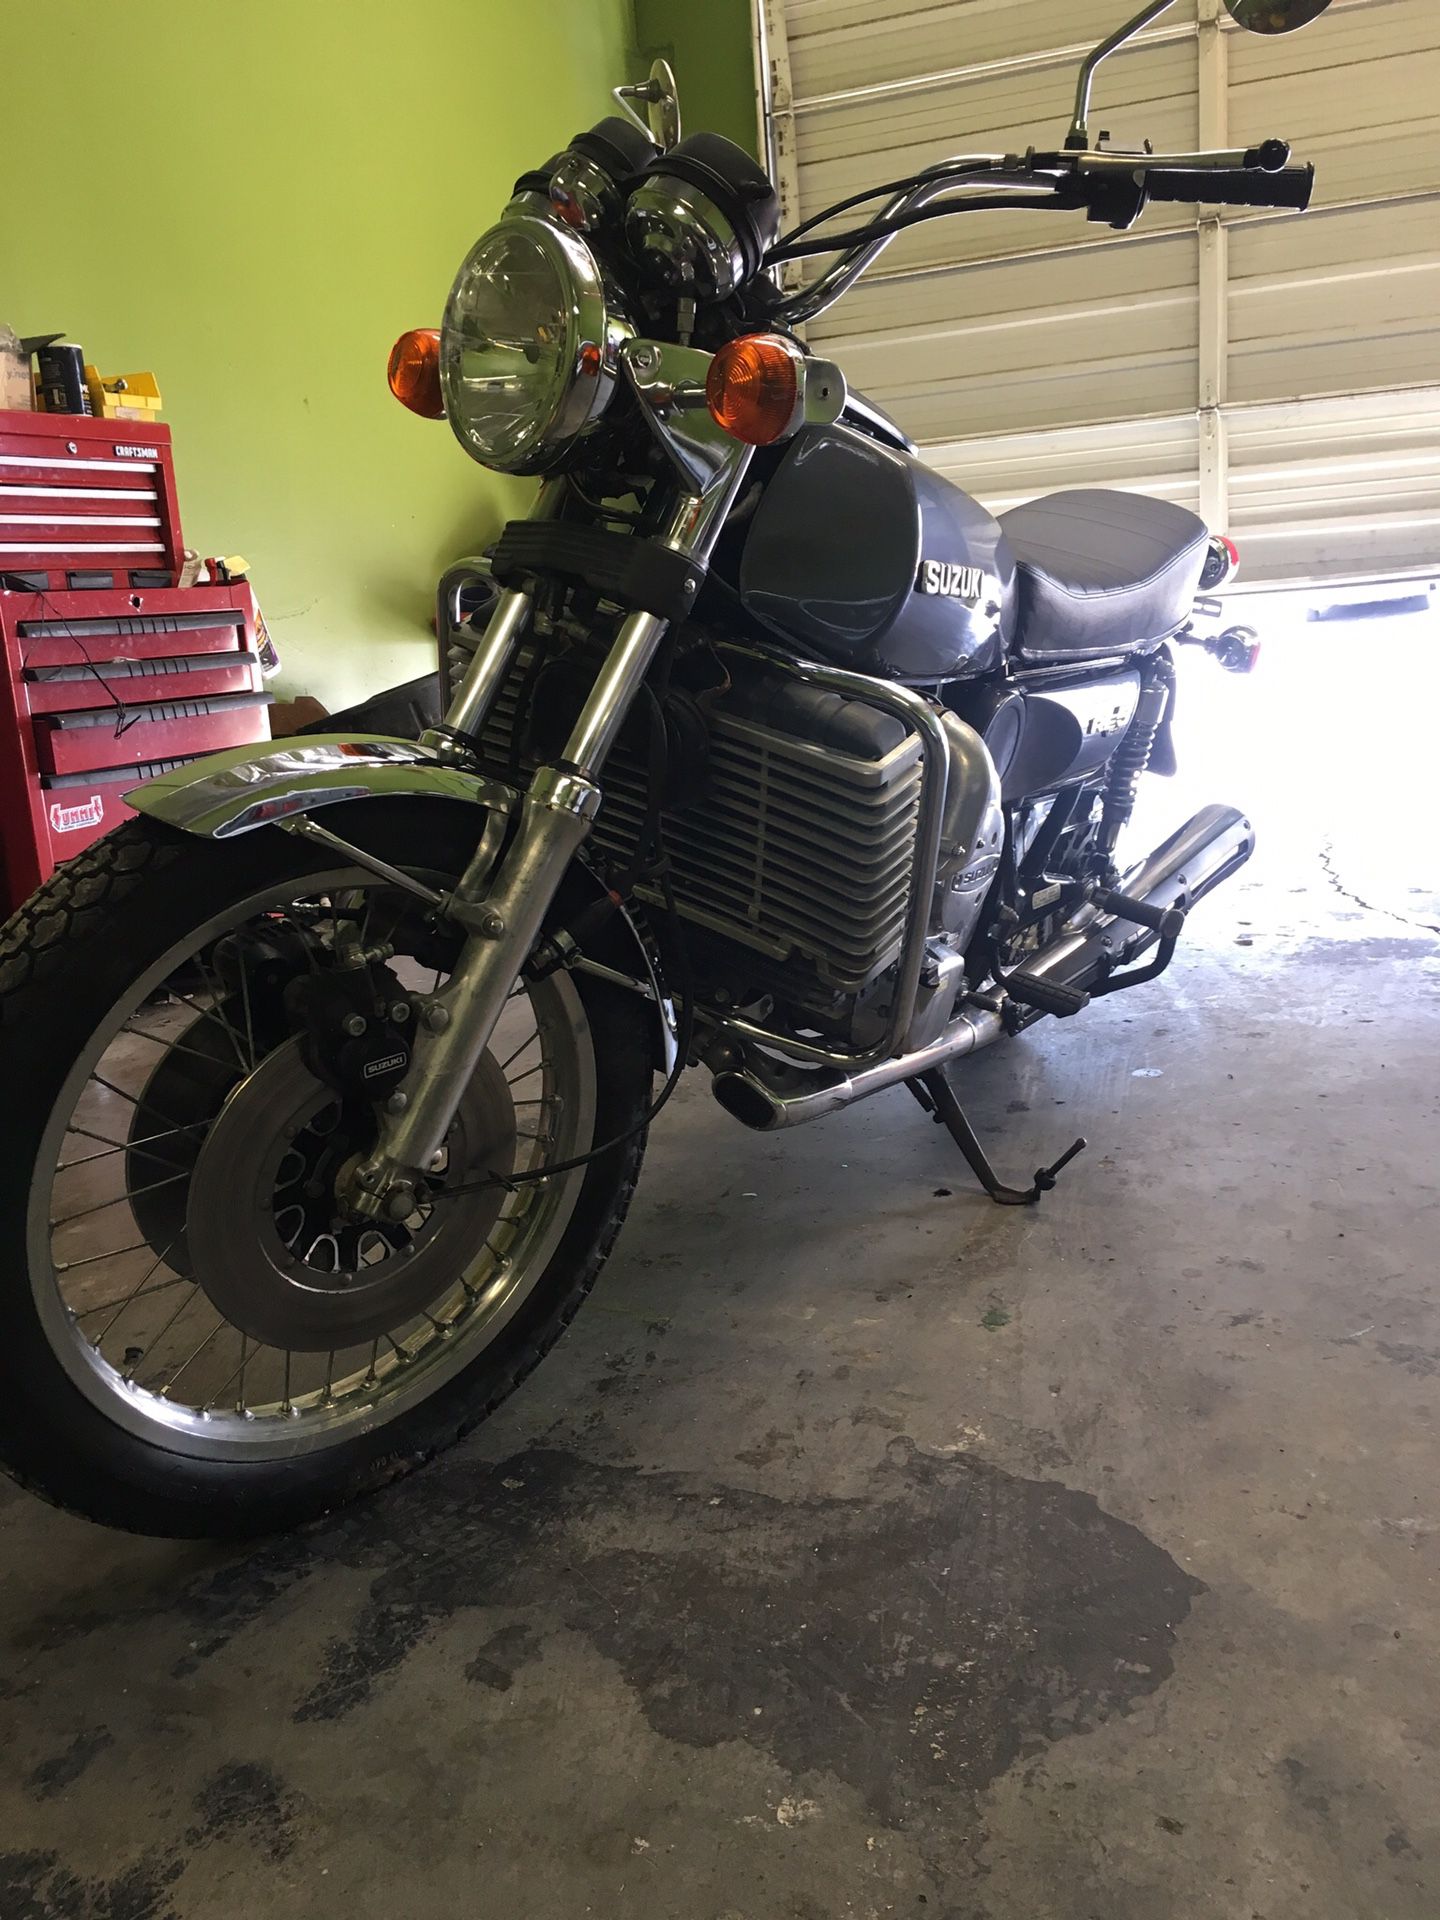 1976 Suzuki Rotary motorcycle